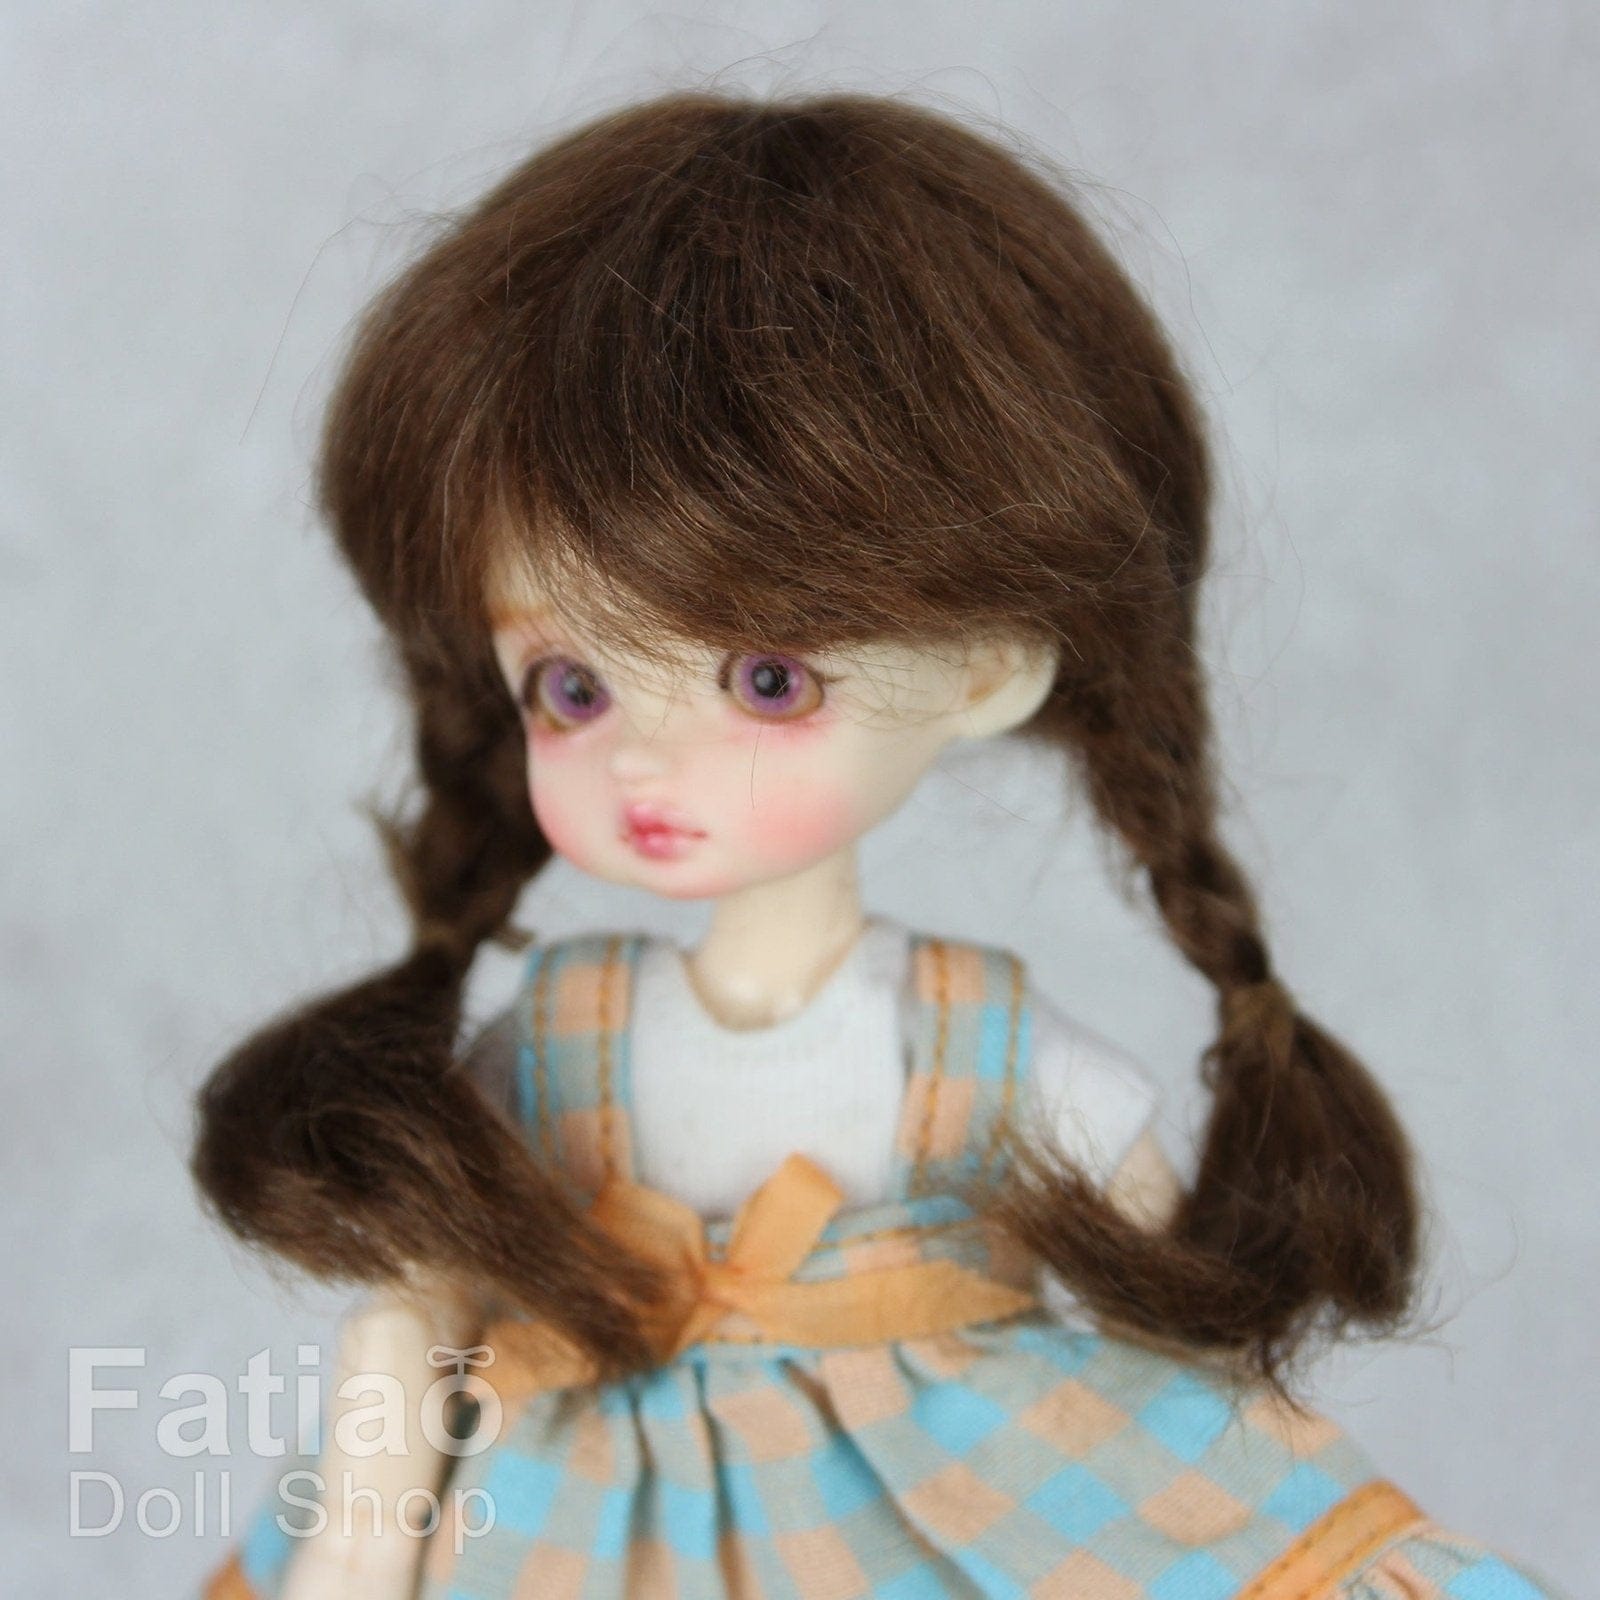 【Fatiao Doll Shop】FWF-143M 娃用假髮 多色 / 3-4吋 BJD 12分 pukipuki